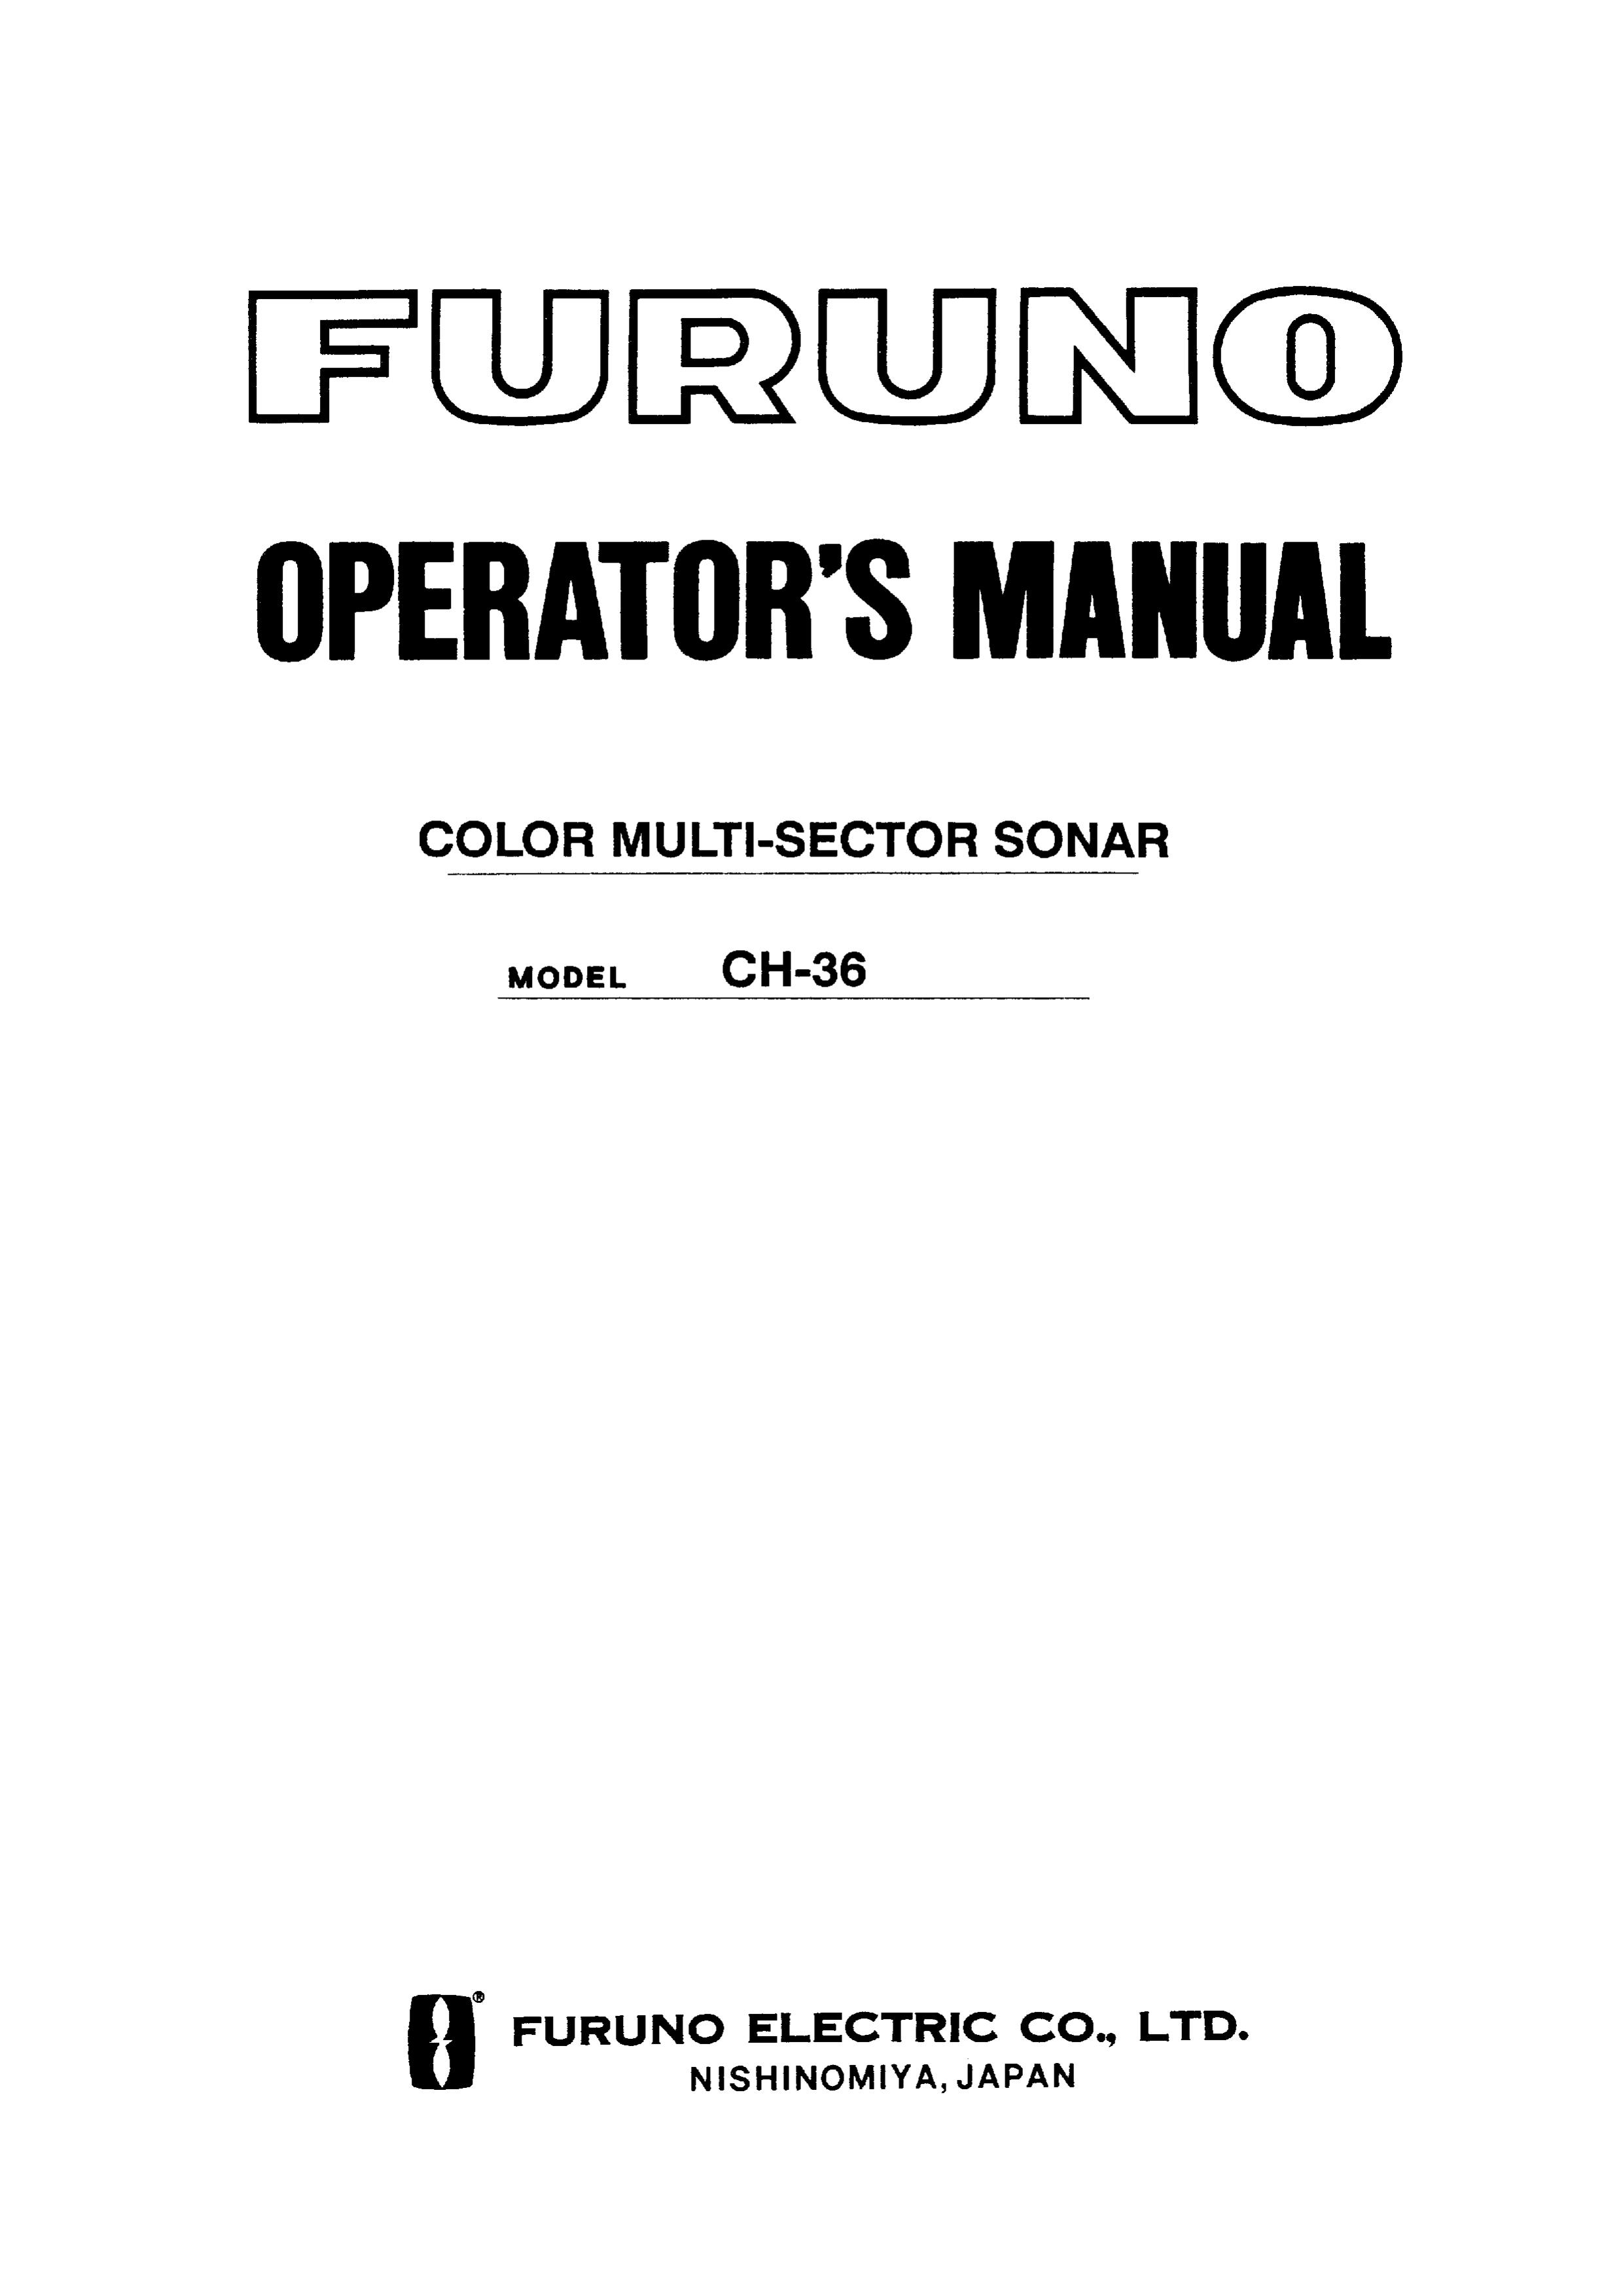 Furuno CH-36 SONAR User Manual